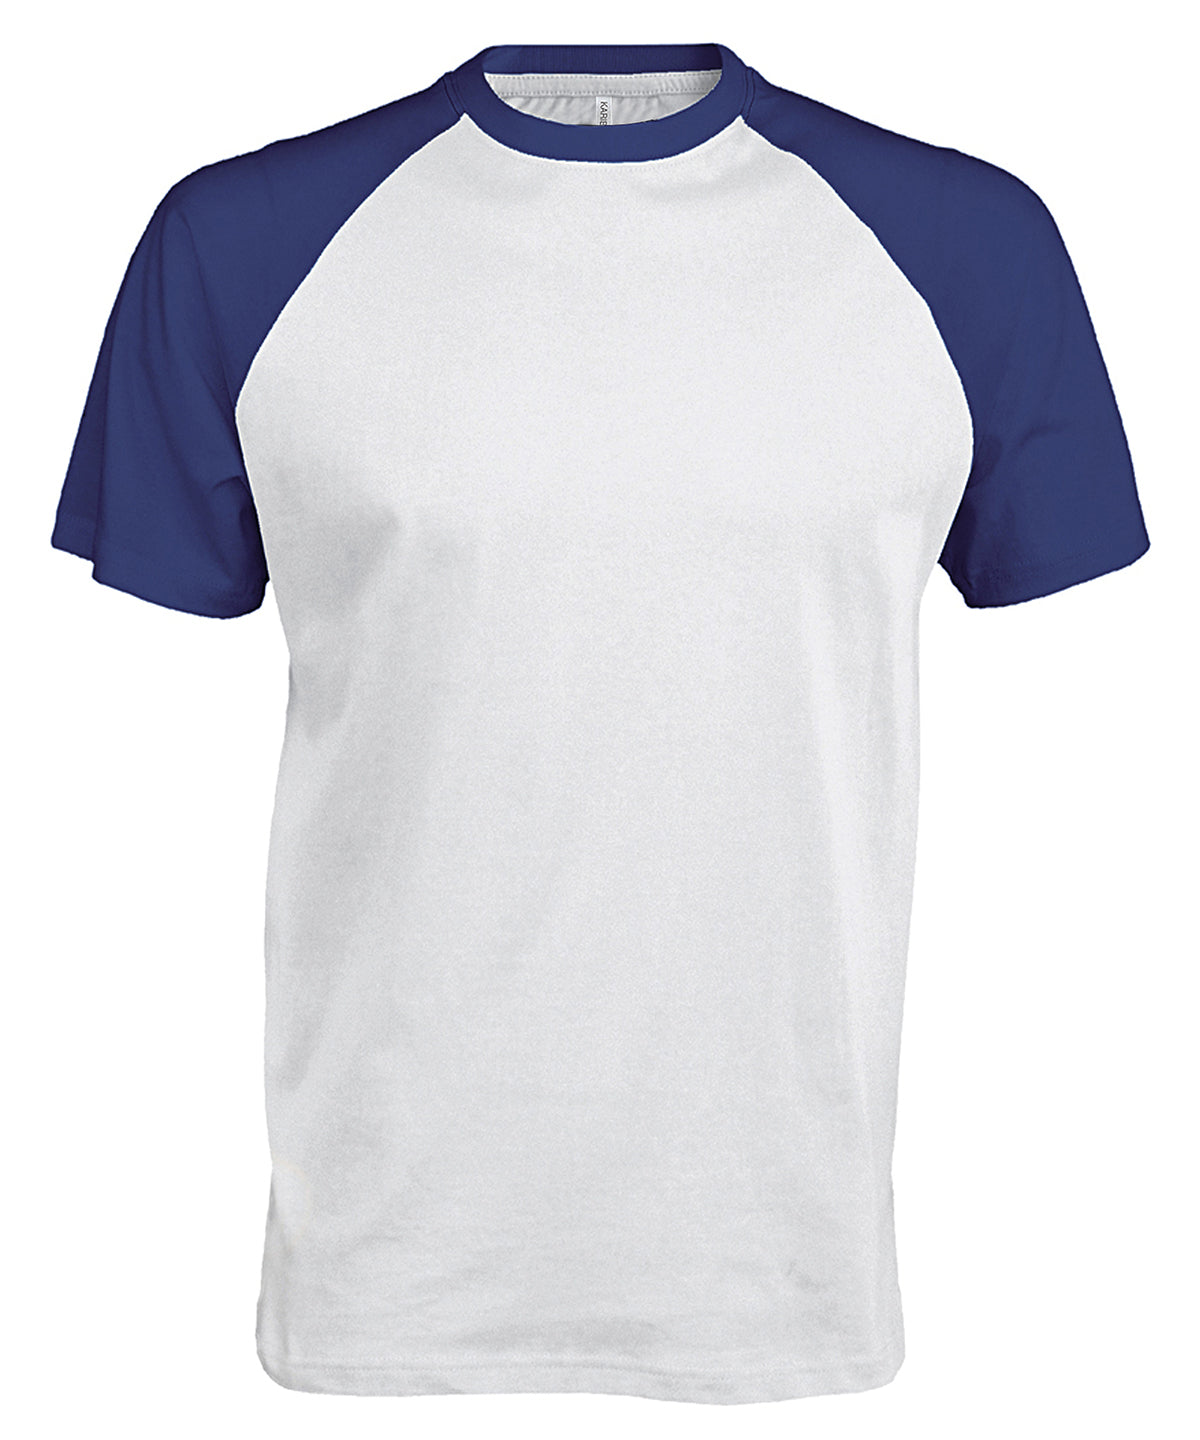 Stuttermabolir - Baseball Short-sleeved Two-tone T-shirt